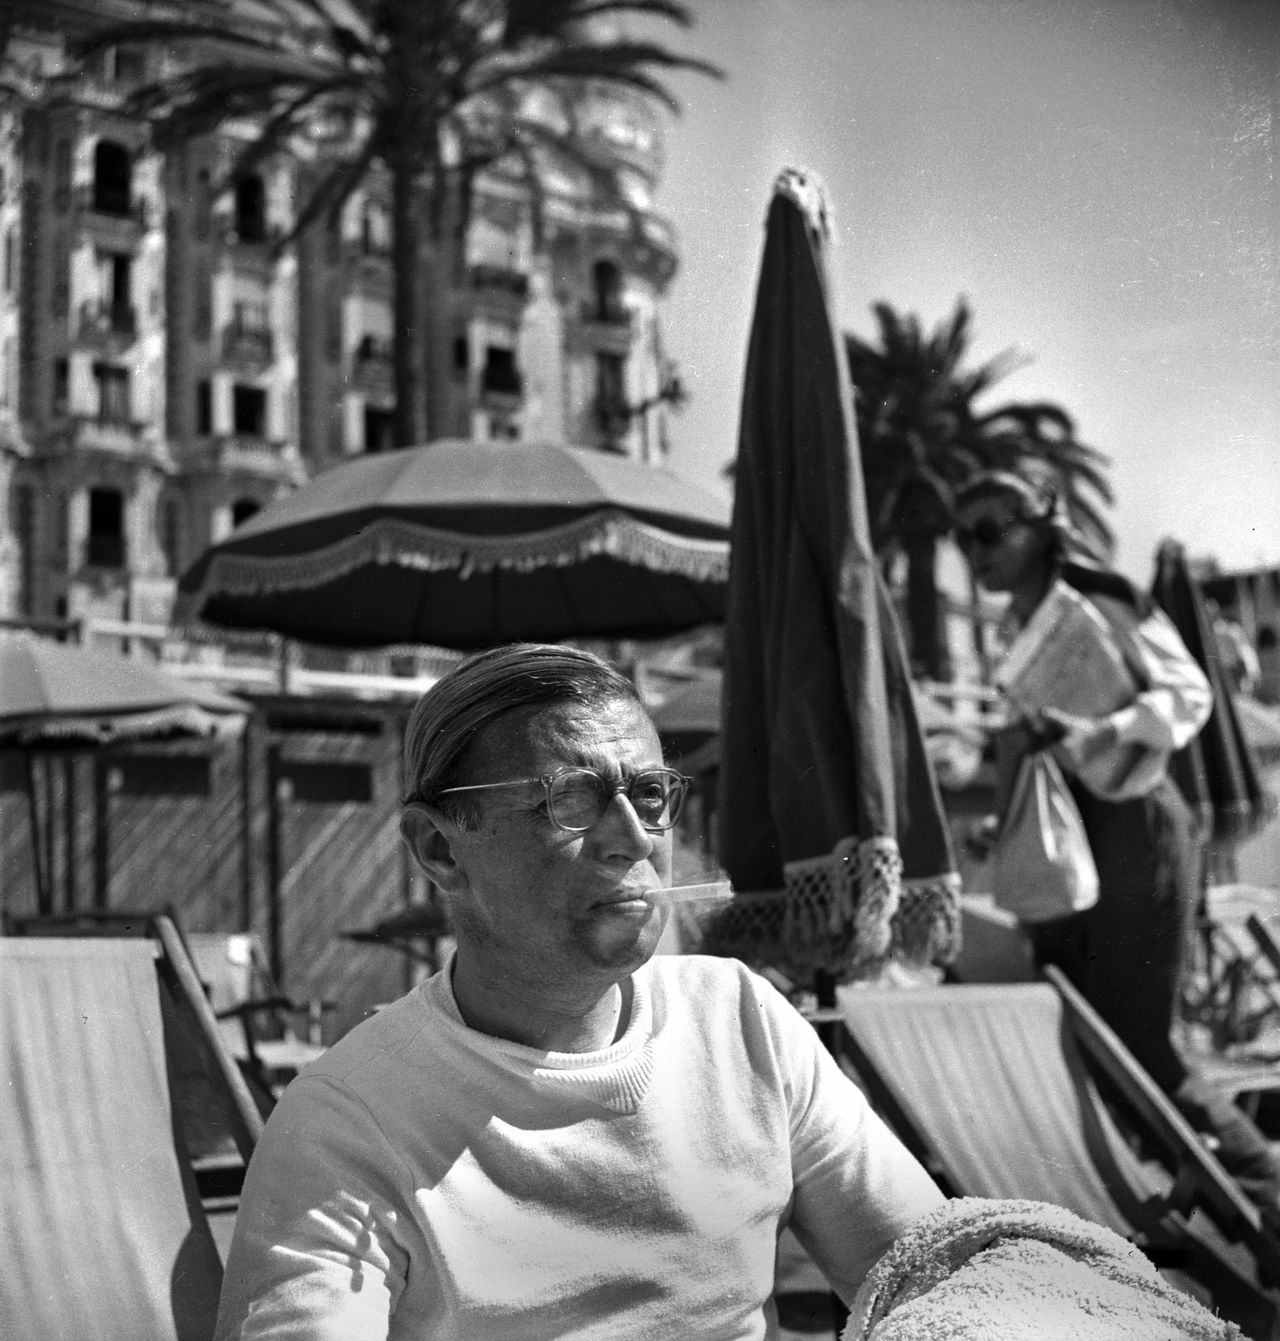 Sartre op het Festival van Cannes, 1947 Foto Lipnitzki/Roger-Viollet Jean-Paul Sartre (1905-1980), philosophe et écrivain français. Festival de Cannes (Alpes-Maritimes), 1947. LIP-5418-023